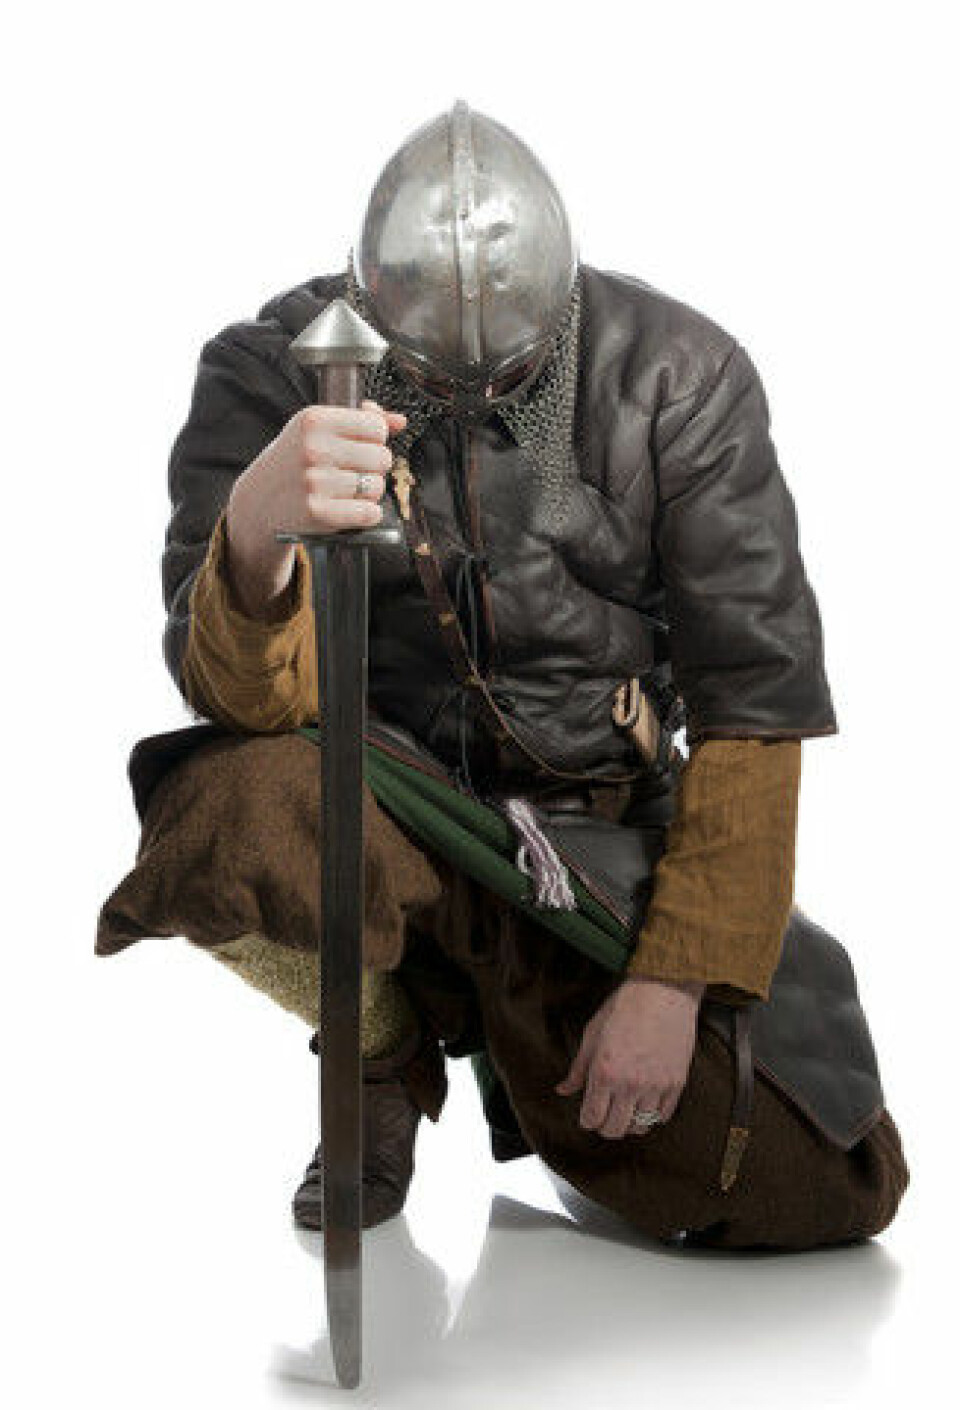 Vikingene brukte ikke bare våpen og skjold. Flere kilder forteller at de også brukte heksekrefter og magi. (Foto: Colourbox)